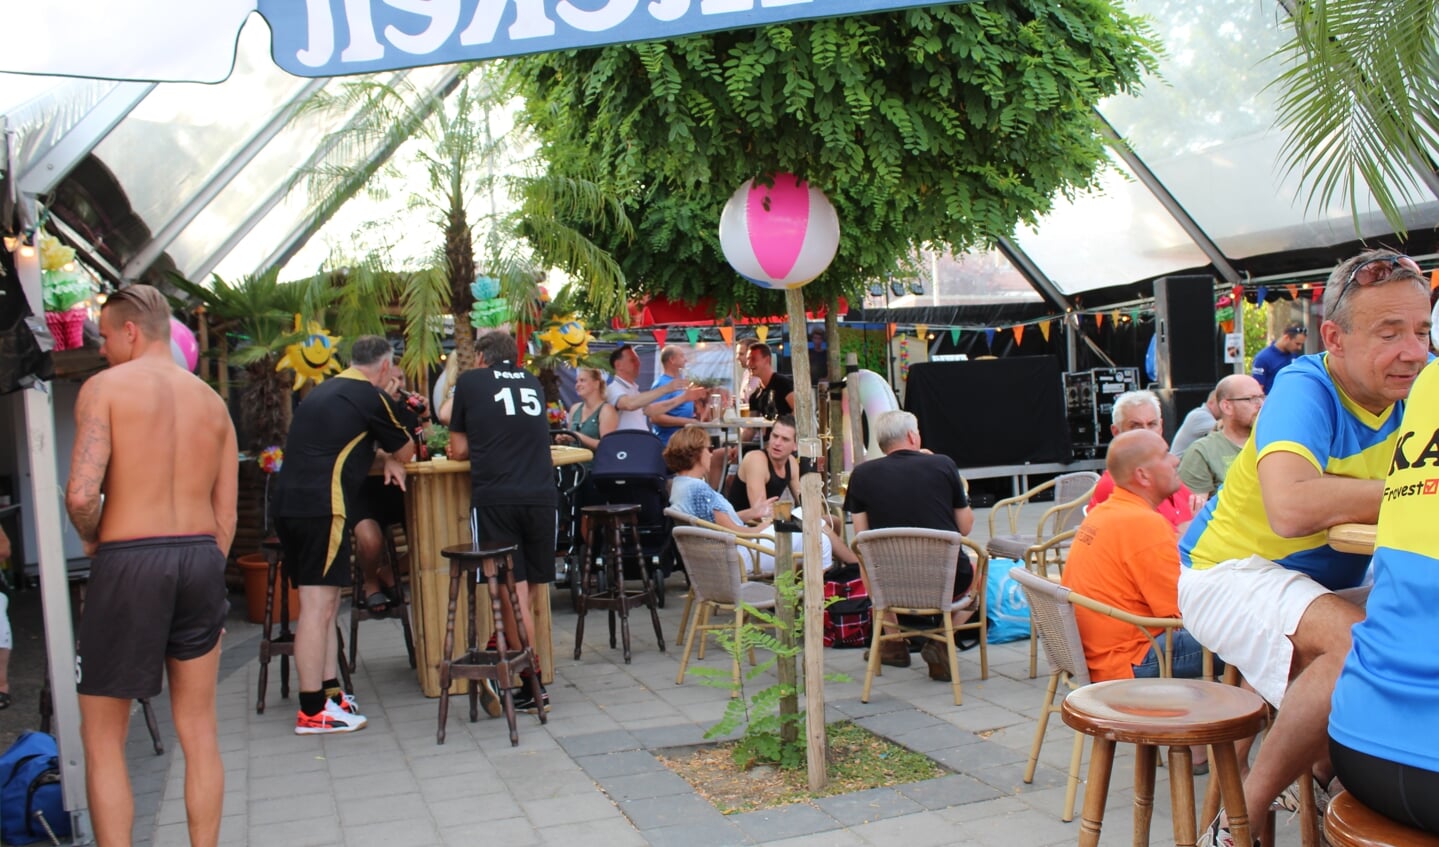 De zomerse temperaturen maken het 24-uurs toernooi FC Lattentrappers tot een exotisch feestje